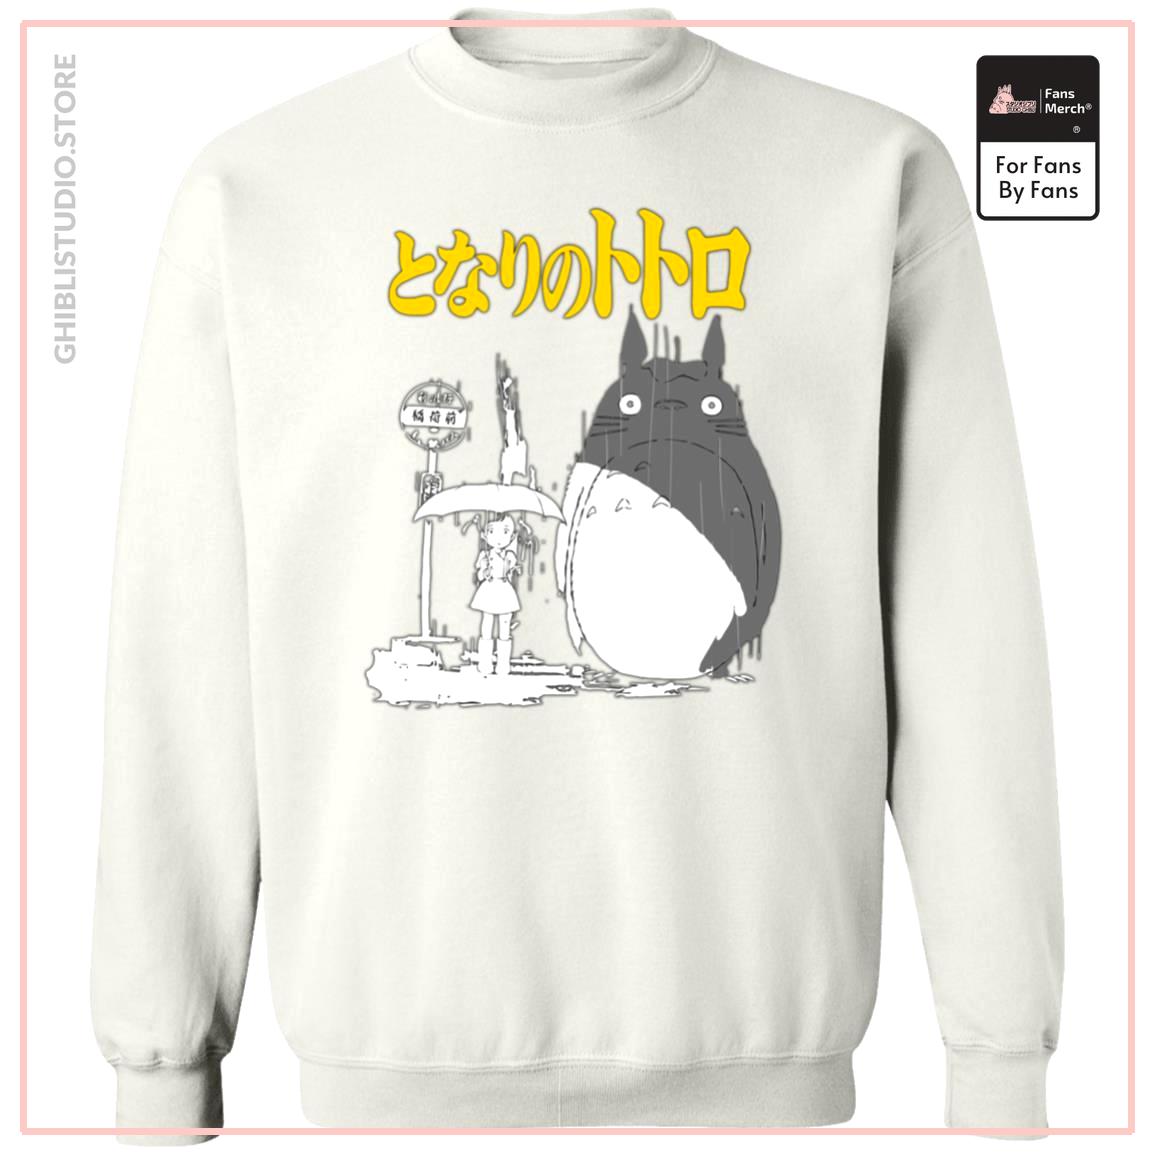 My Neighbor Totoro Poster Black & White Sweatshirt